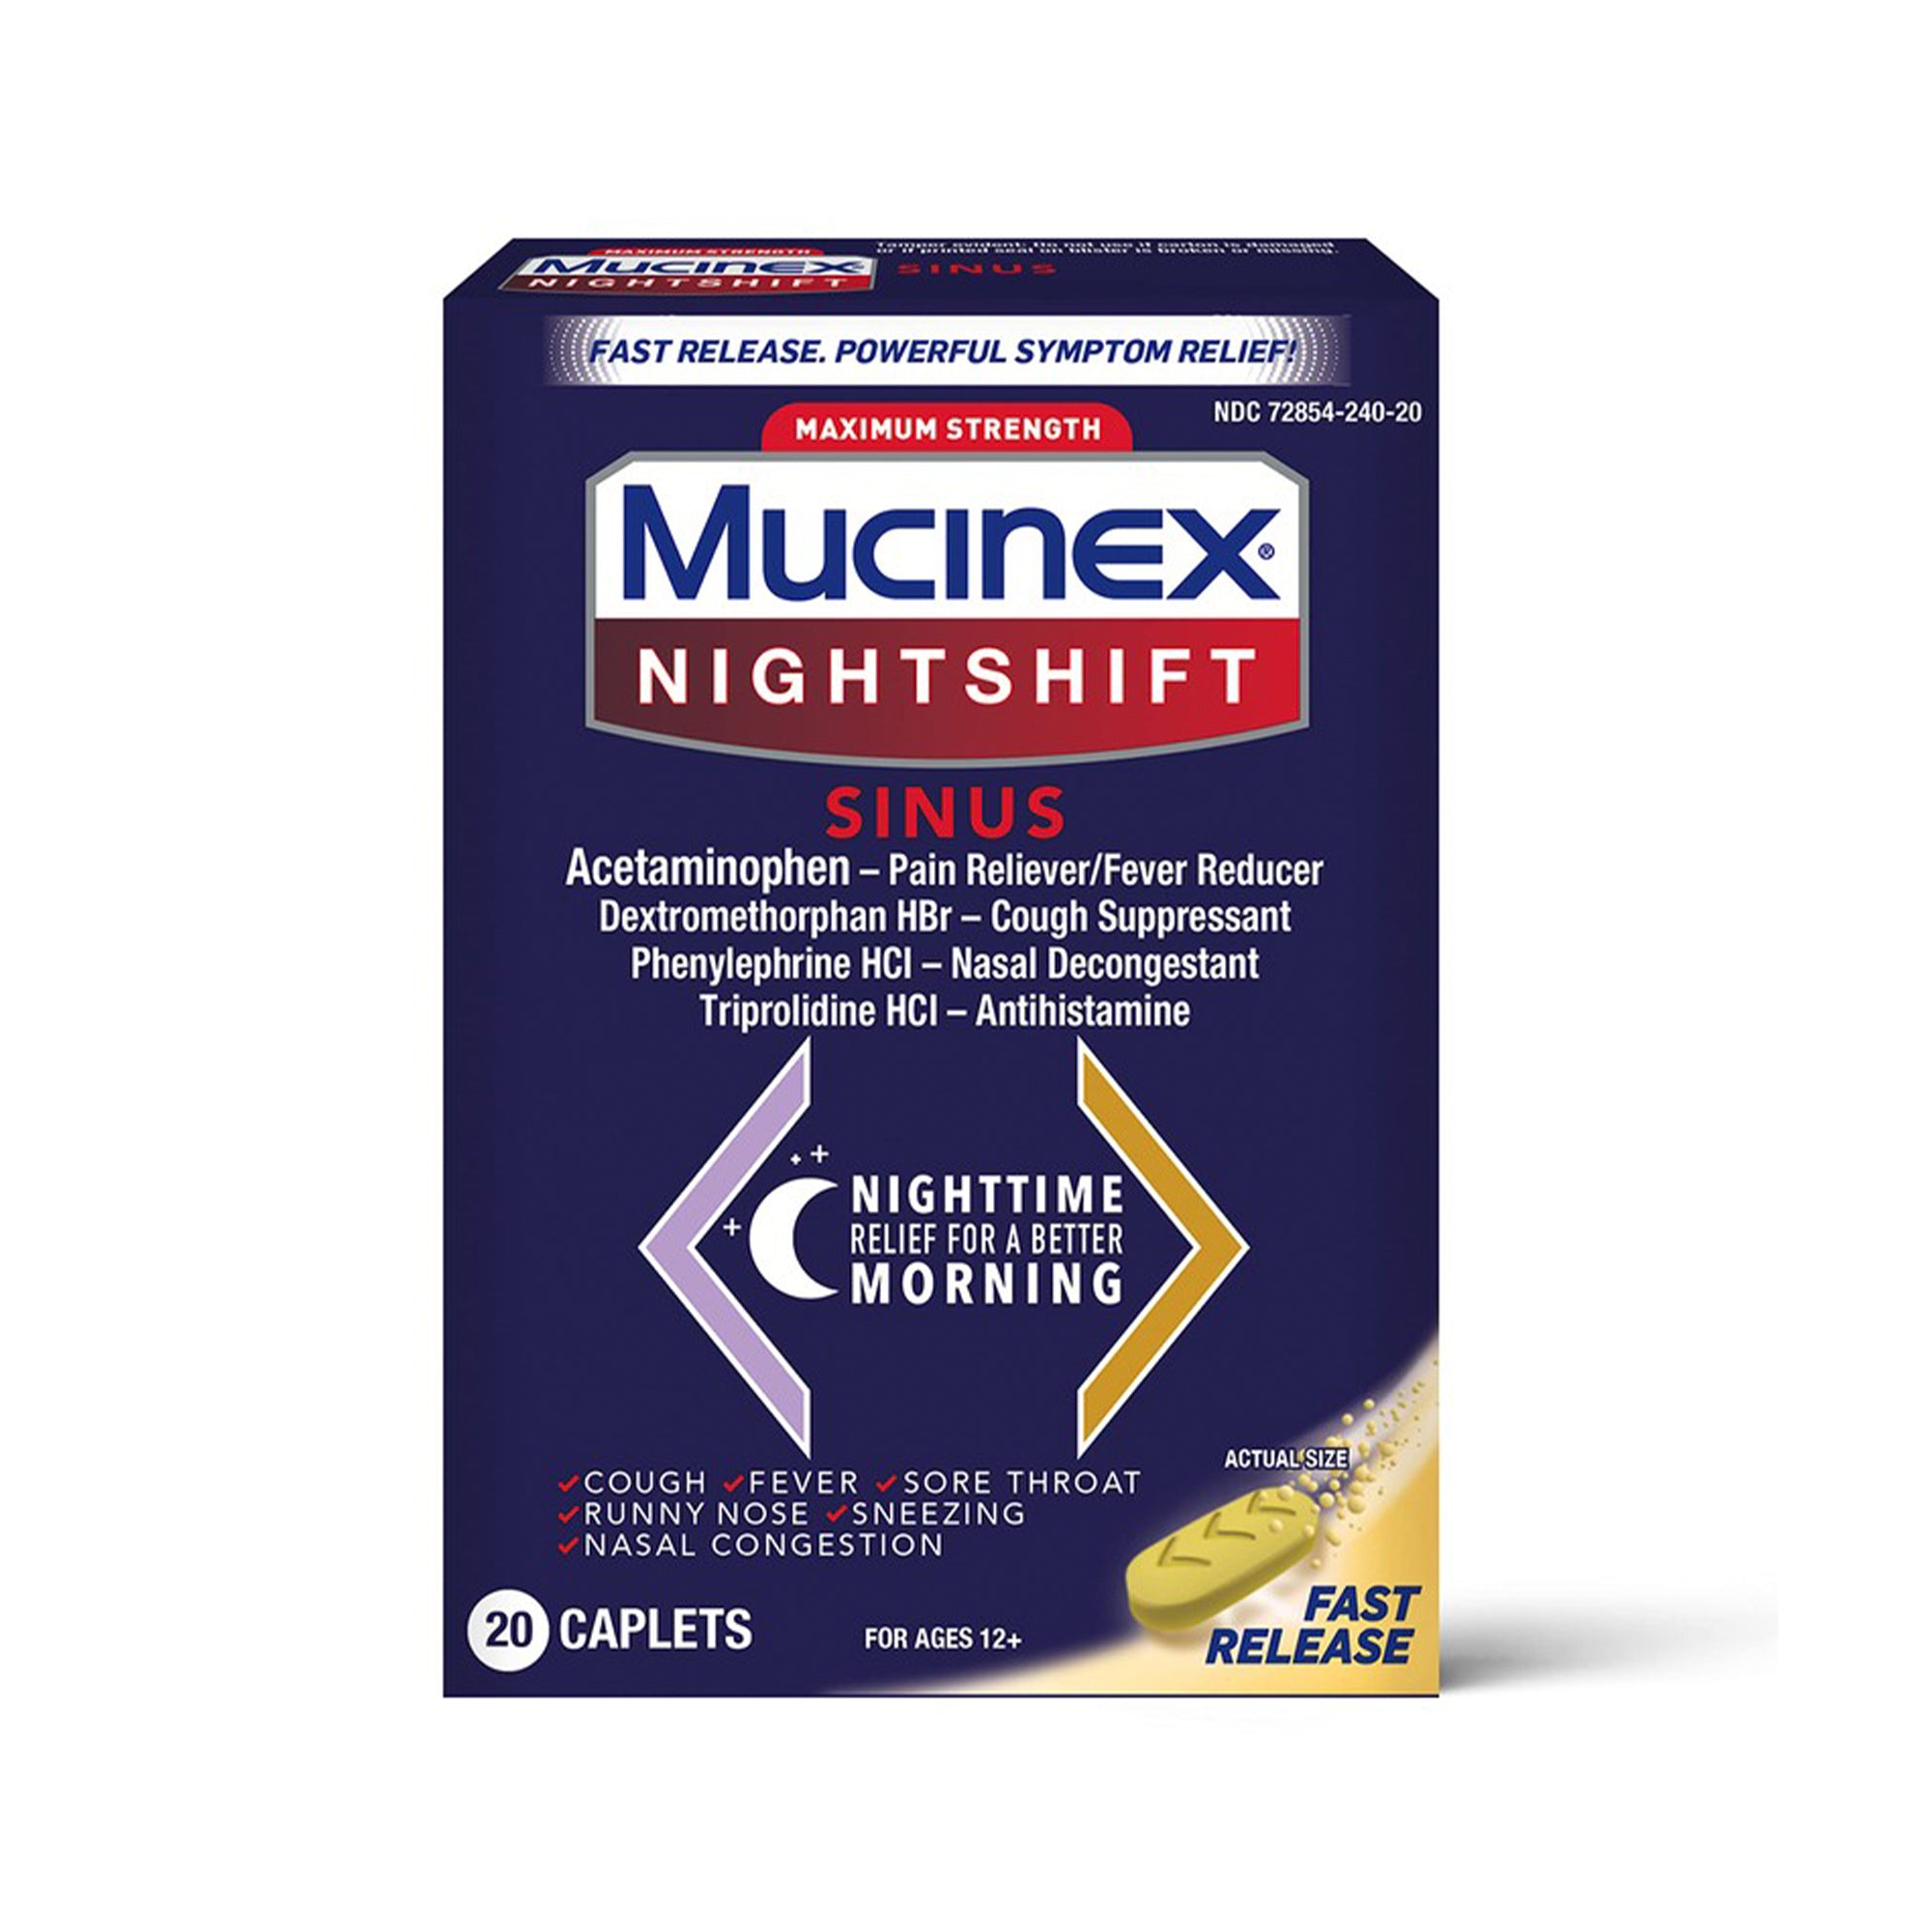 Mucinex Nightshift Sinus Fast Release Maximum Strength, 20 Caplets